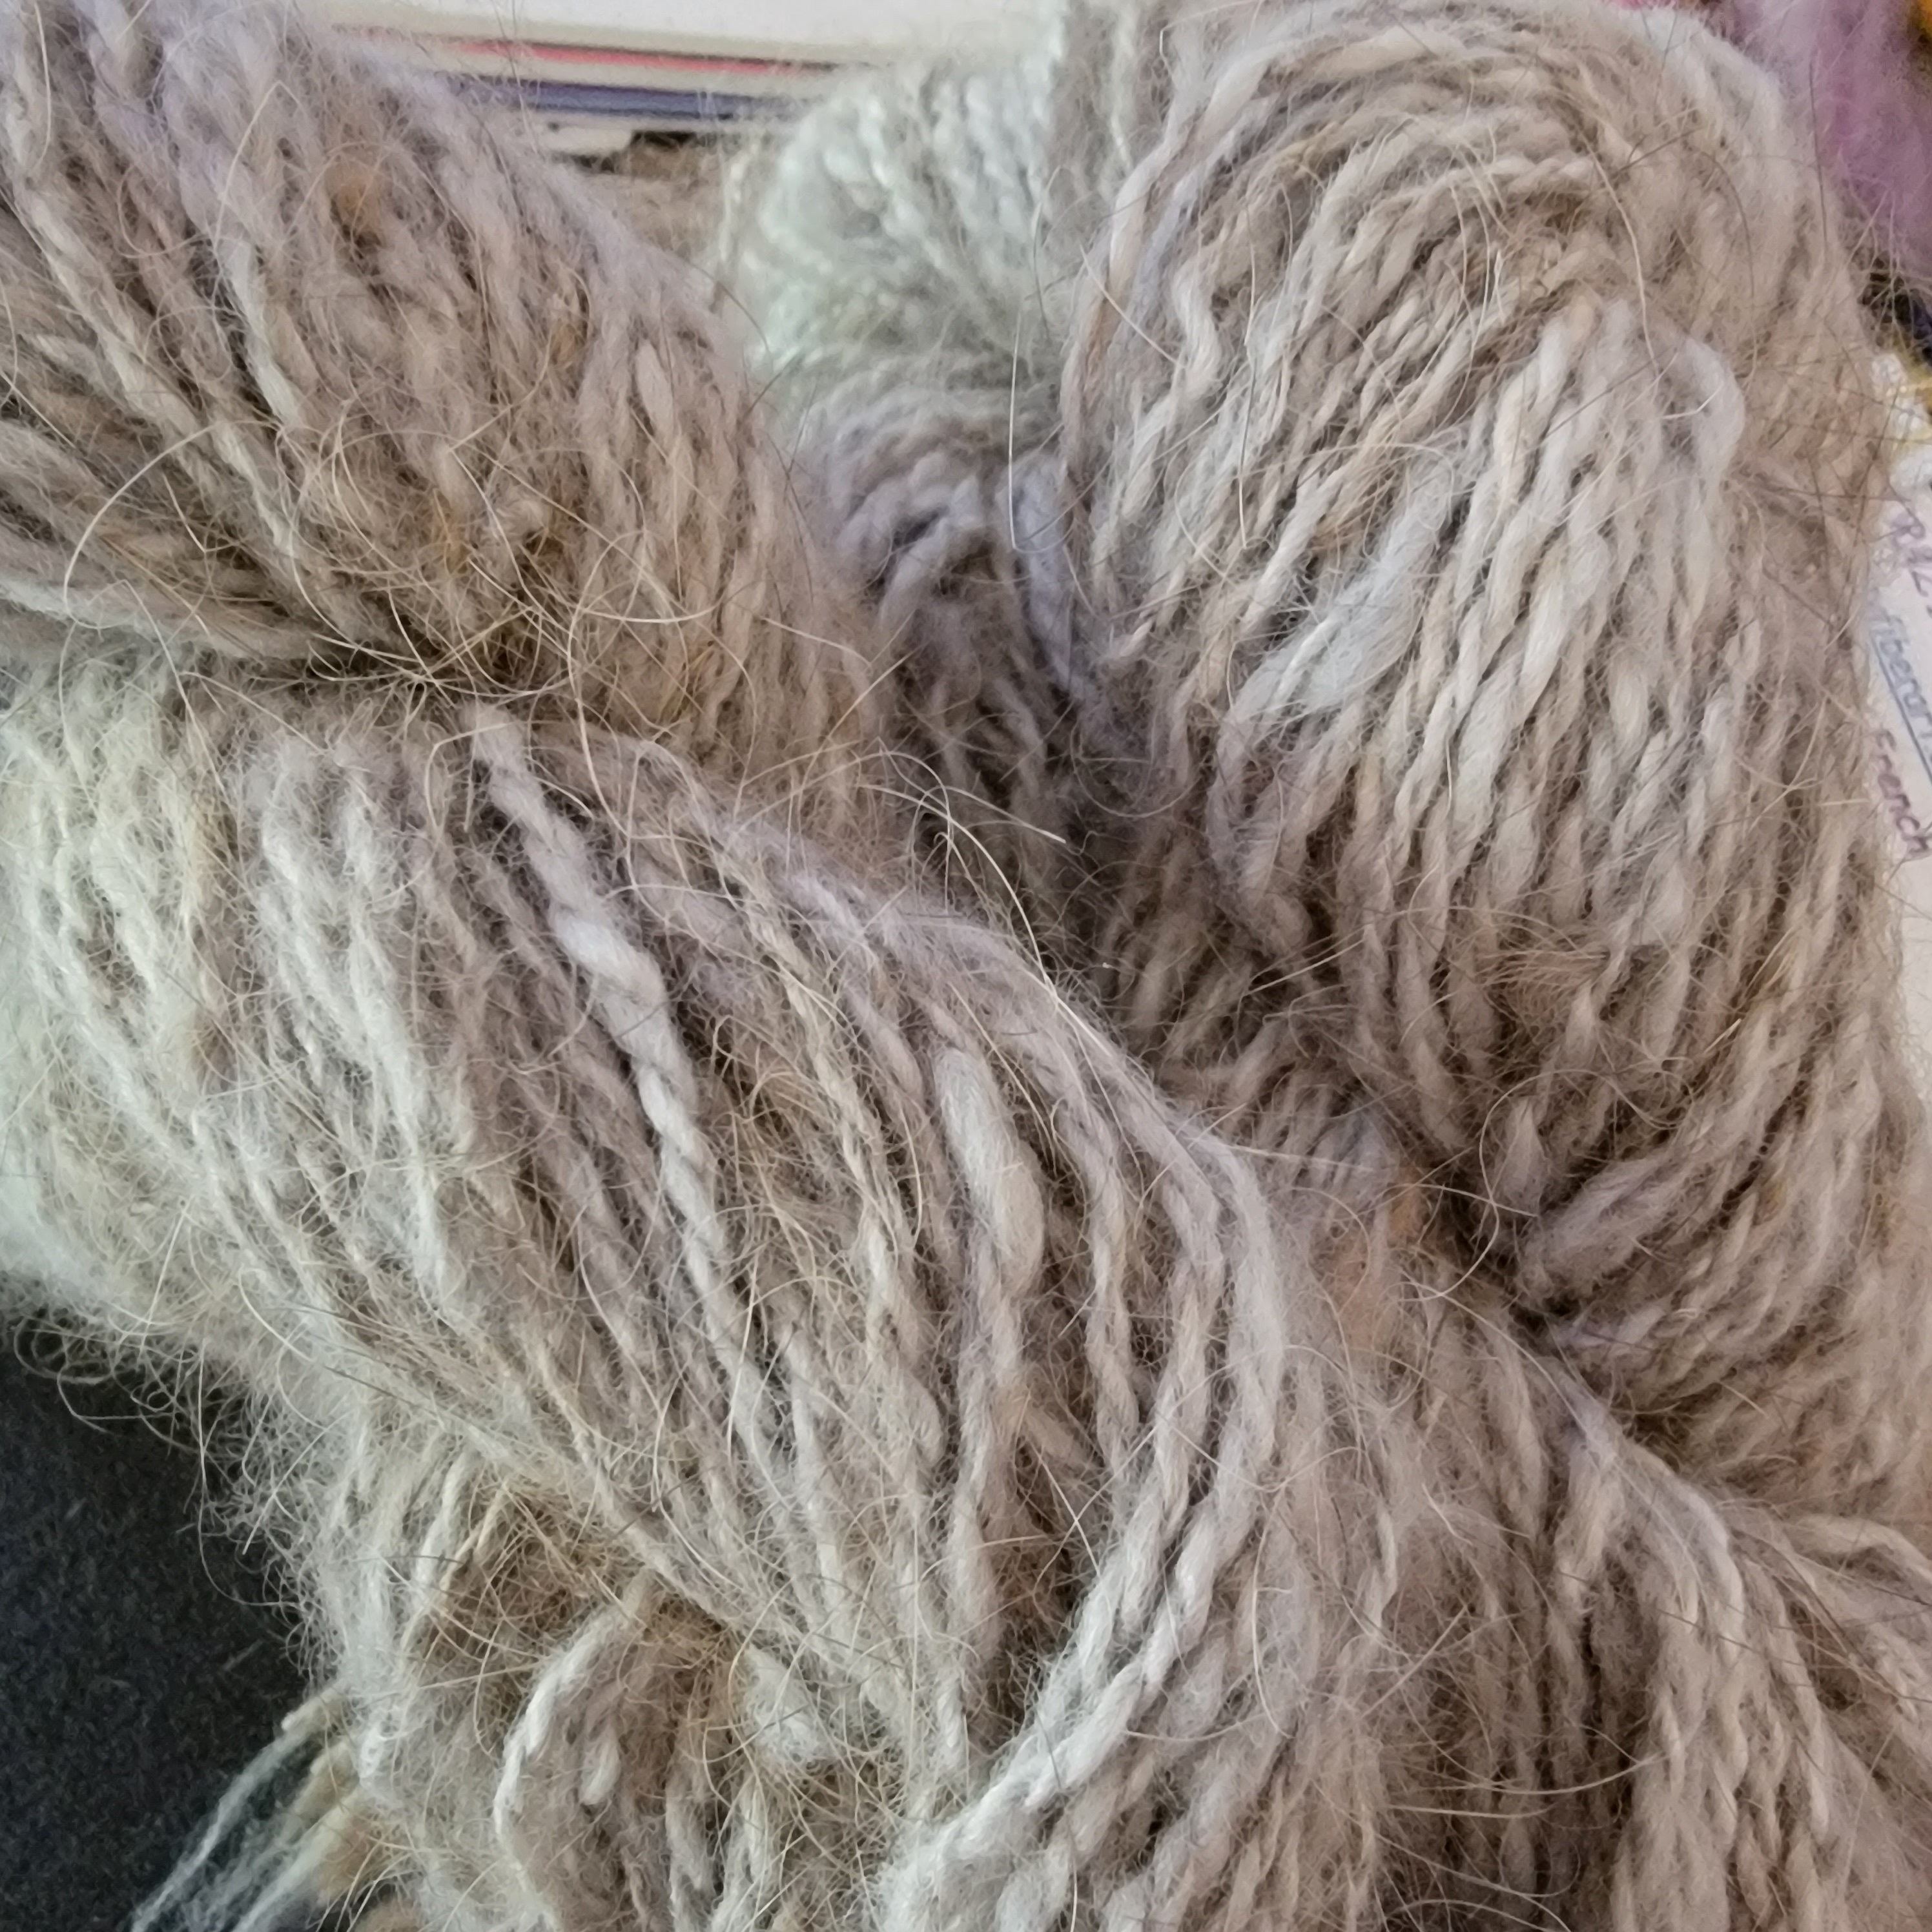 Wired Yarn Trim - Fluffy Brown Yarn Fur Craft Cord, 3 Yds.